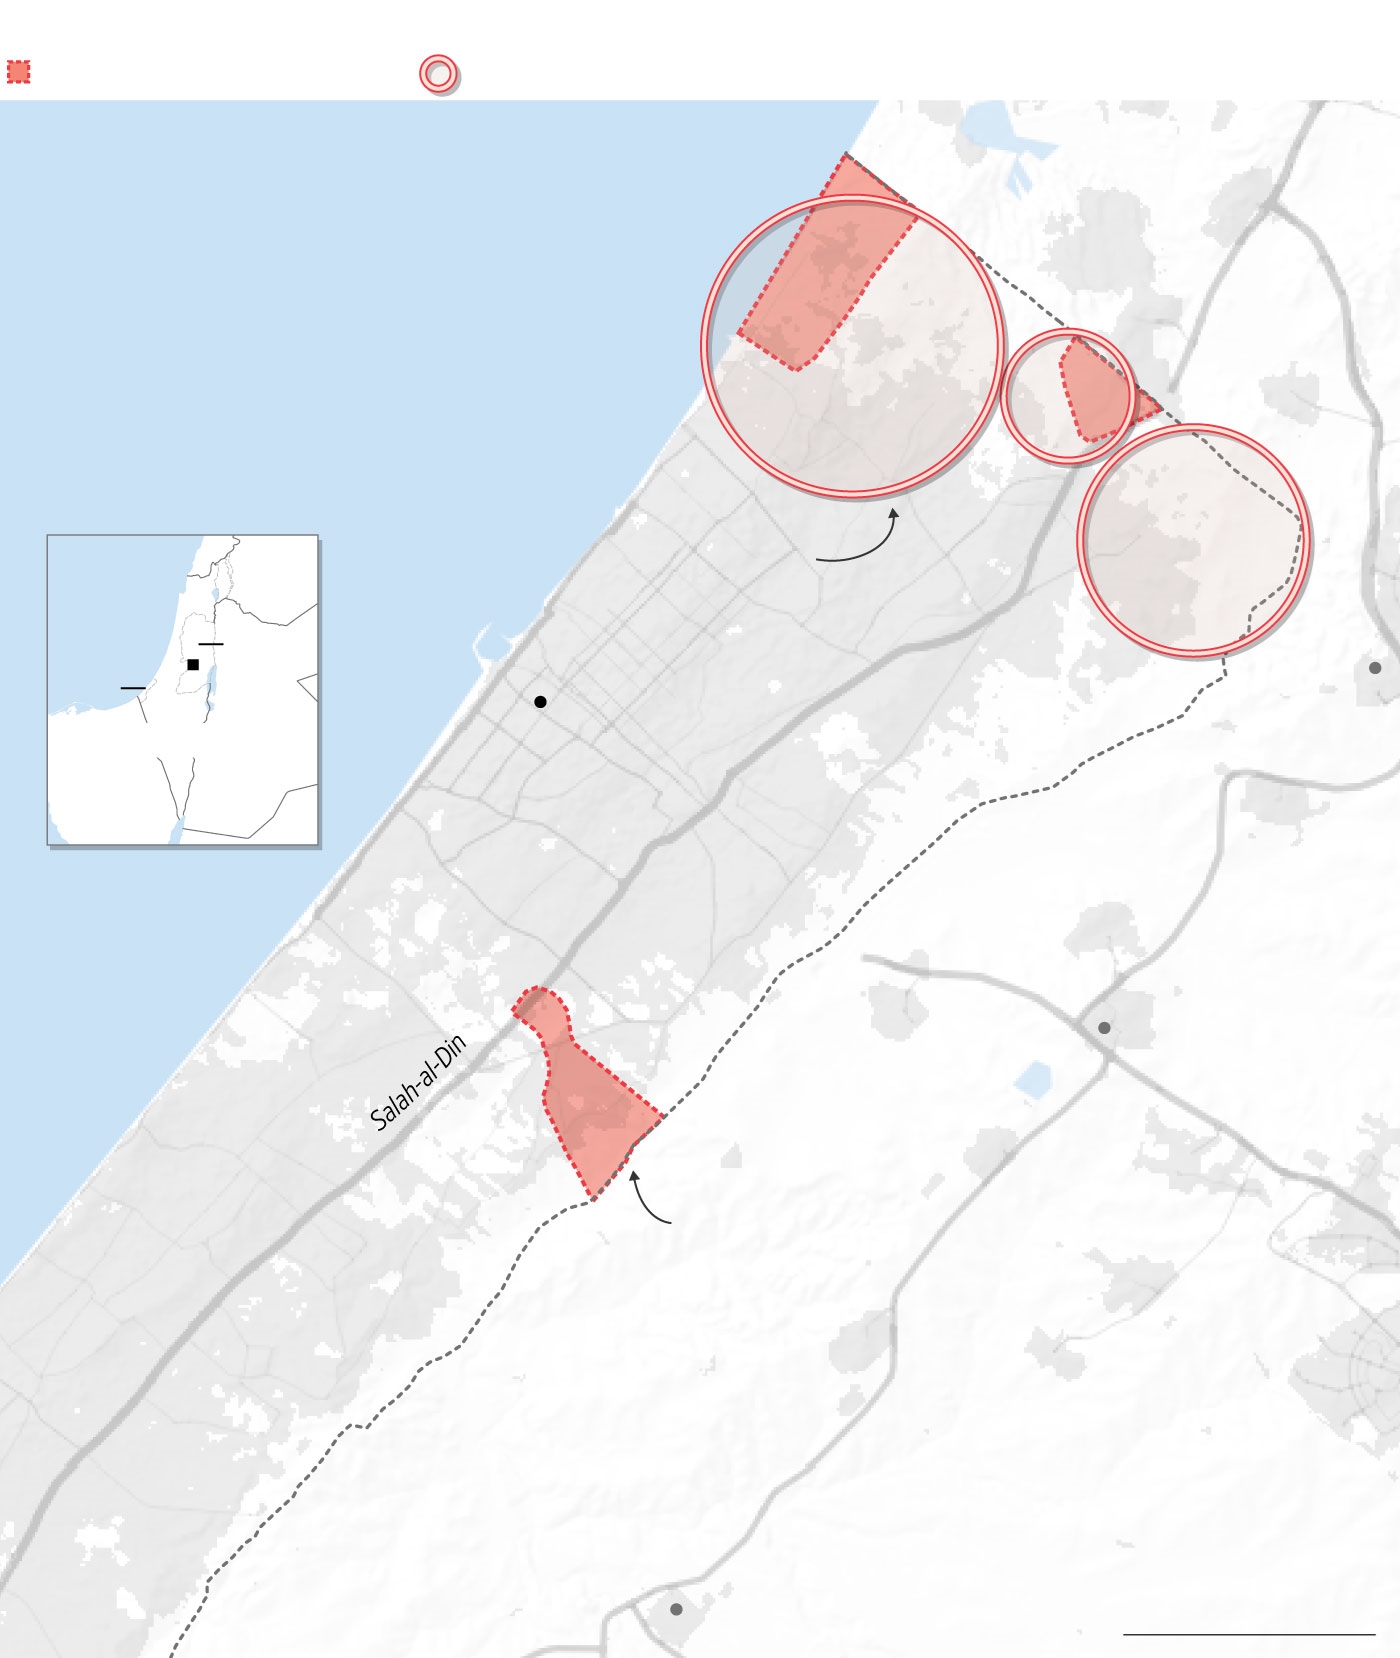 Οι Ισραηλινοί βομβάρδισαν προσφυγικό καταυλισμό και σκότωσαν τουλάχιστον 50 άτομα, λένε οι Παλαιστίνιοι